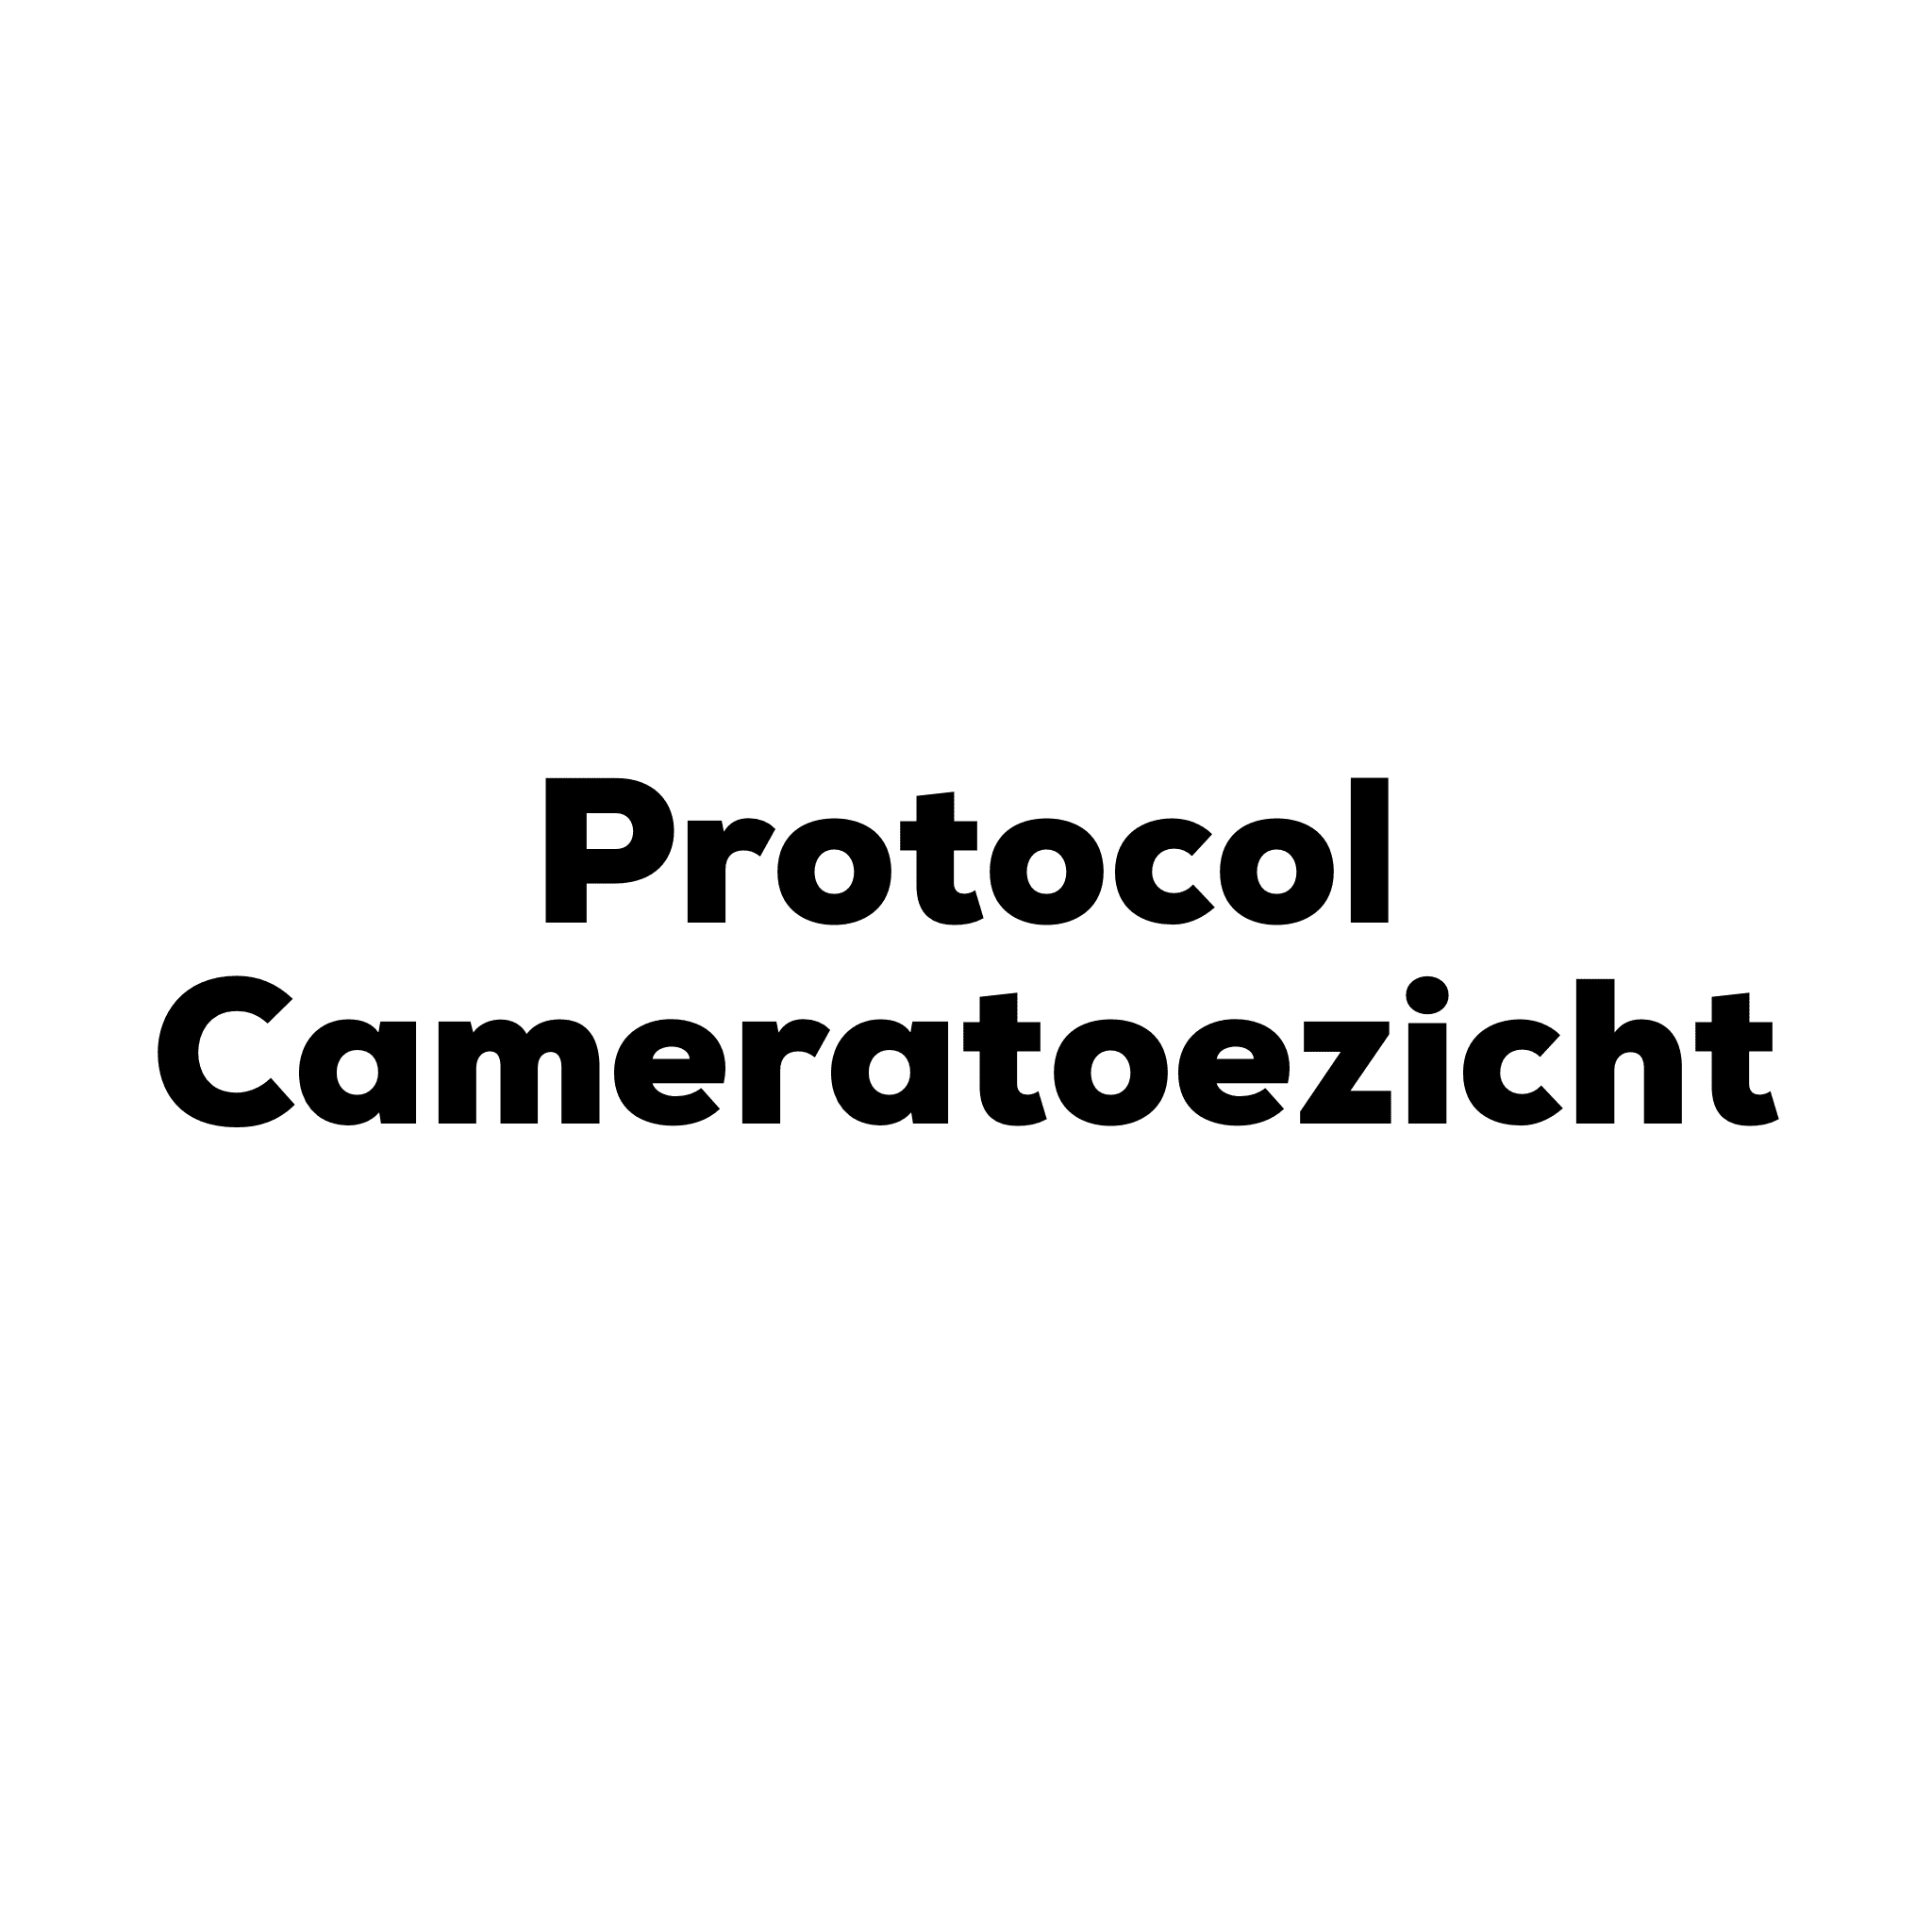 Protocol Cameratoezicht